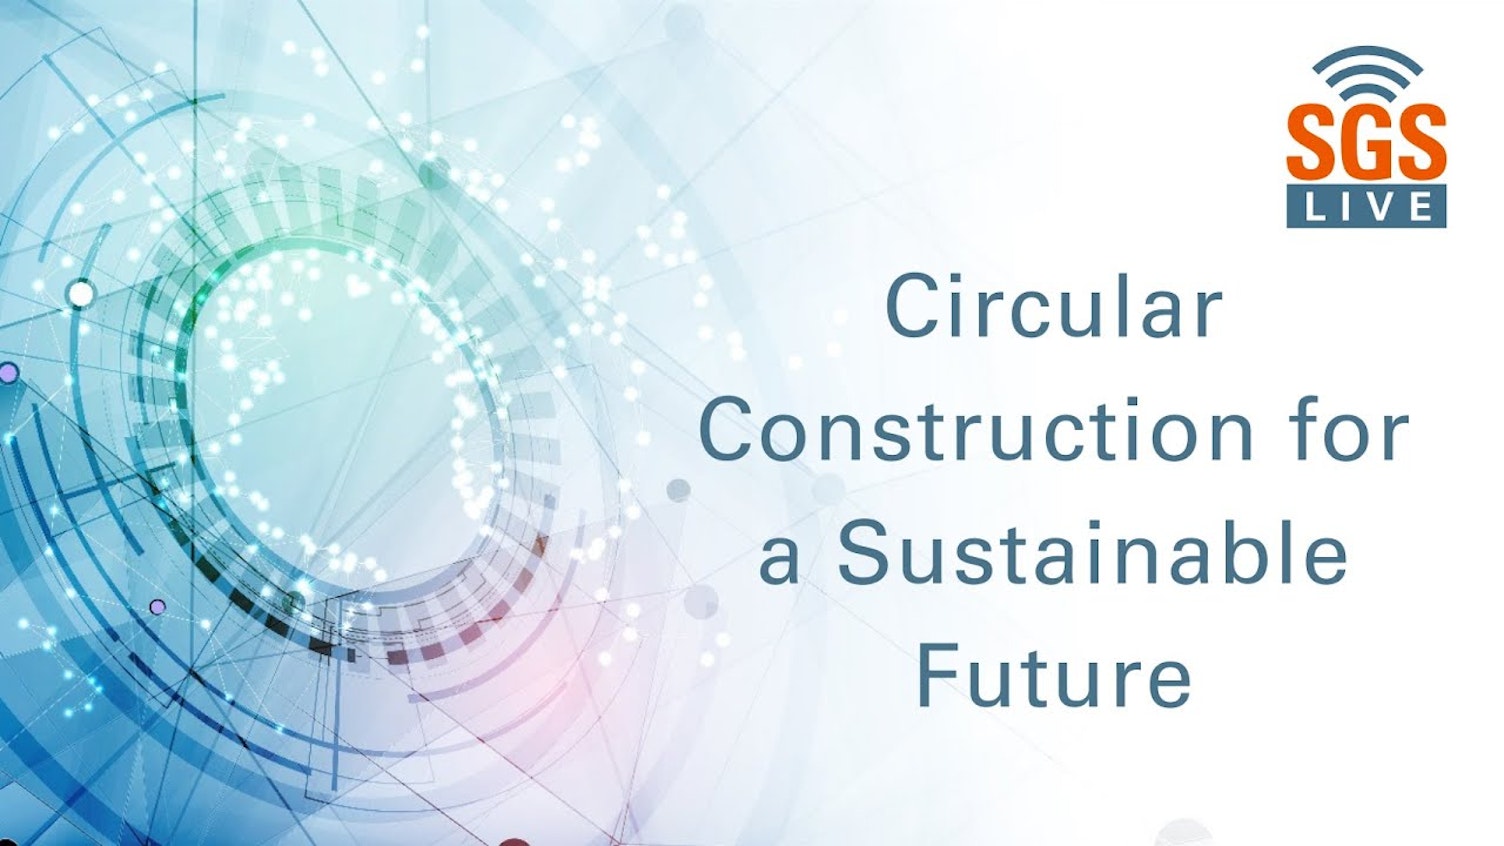 Construcción circular para un futuro sostenible